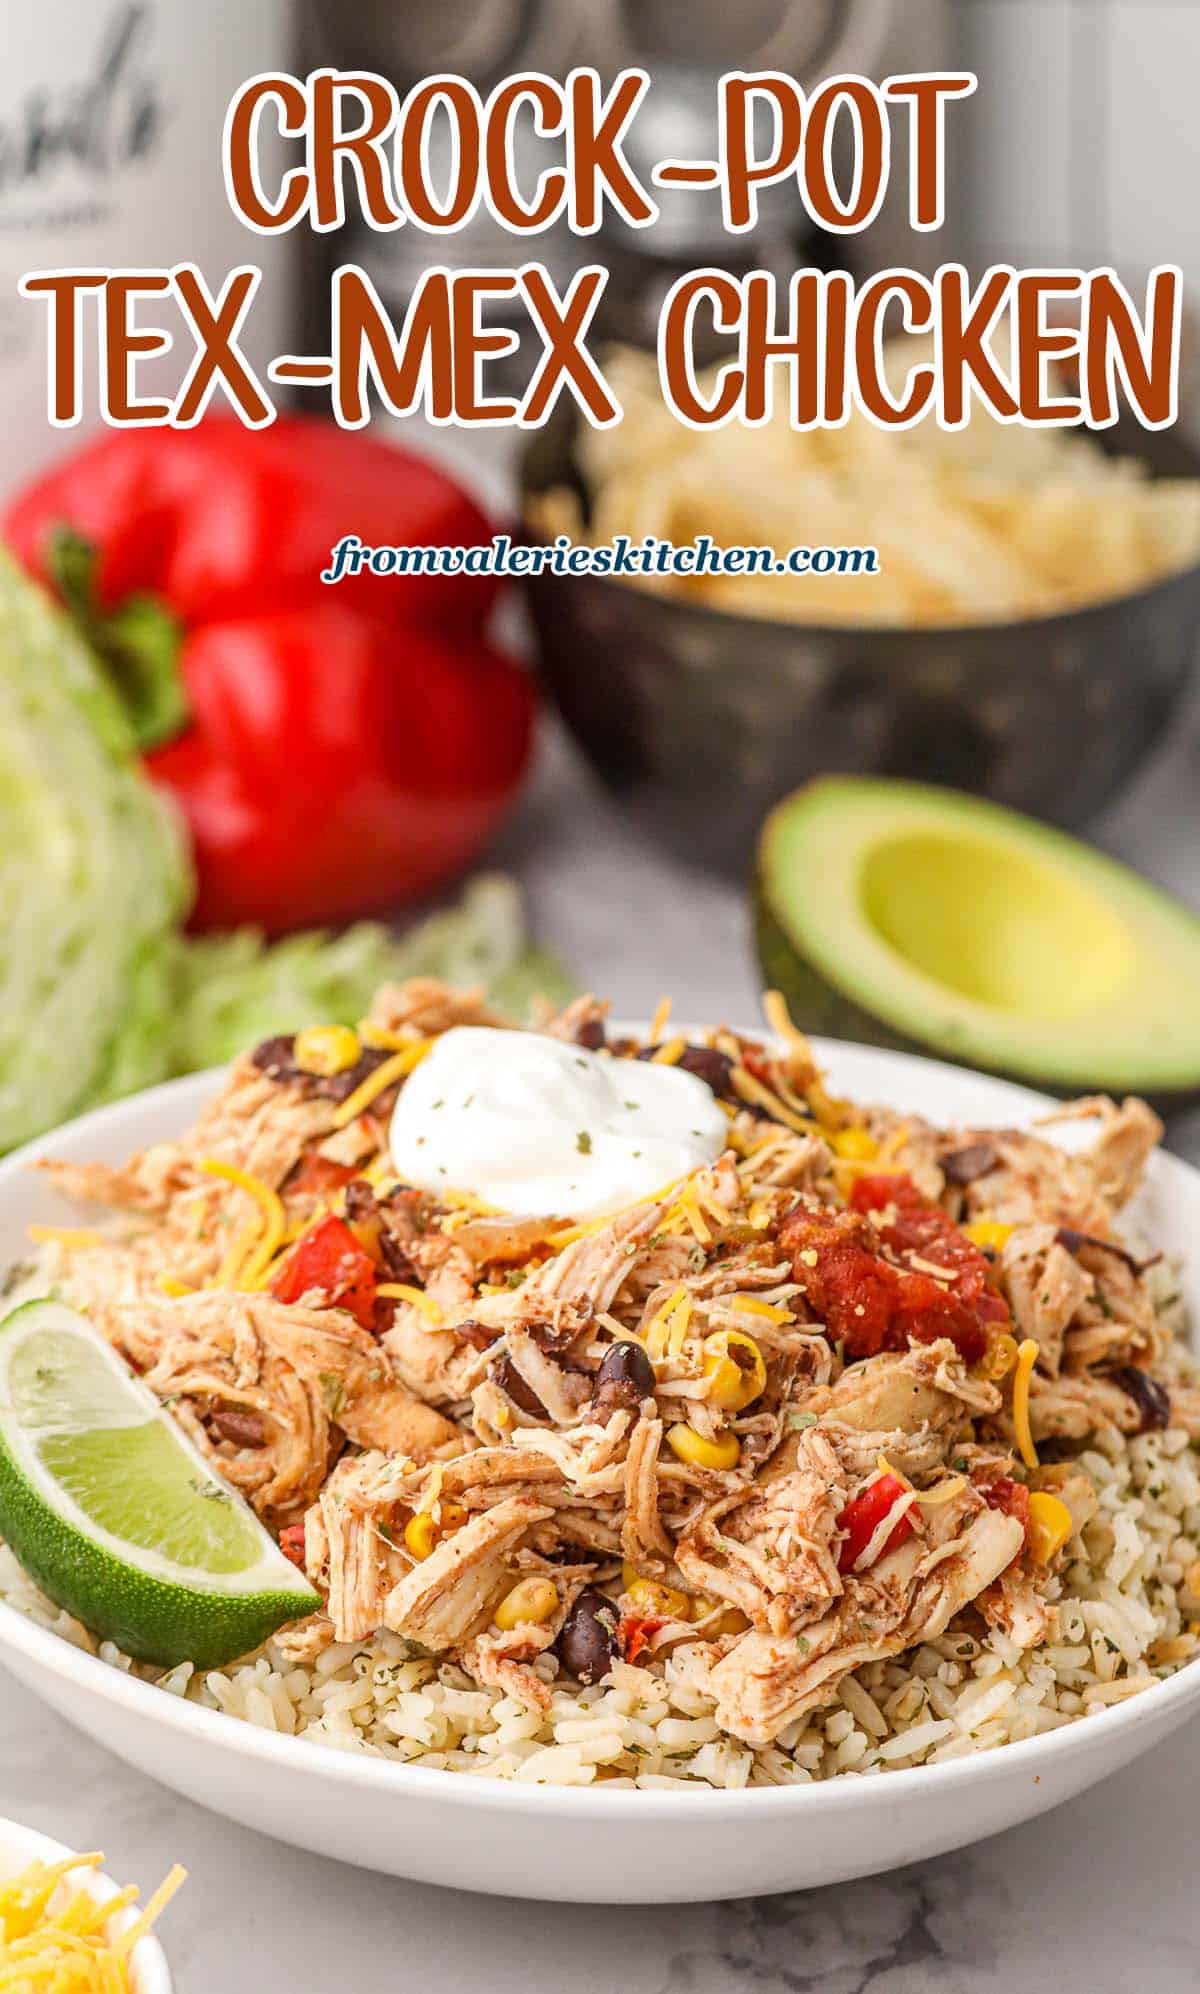 Crock-Pot Tex-Mex Chicken | Valerie's Kitchen